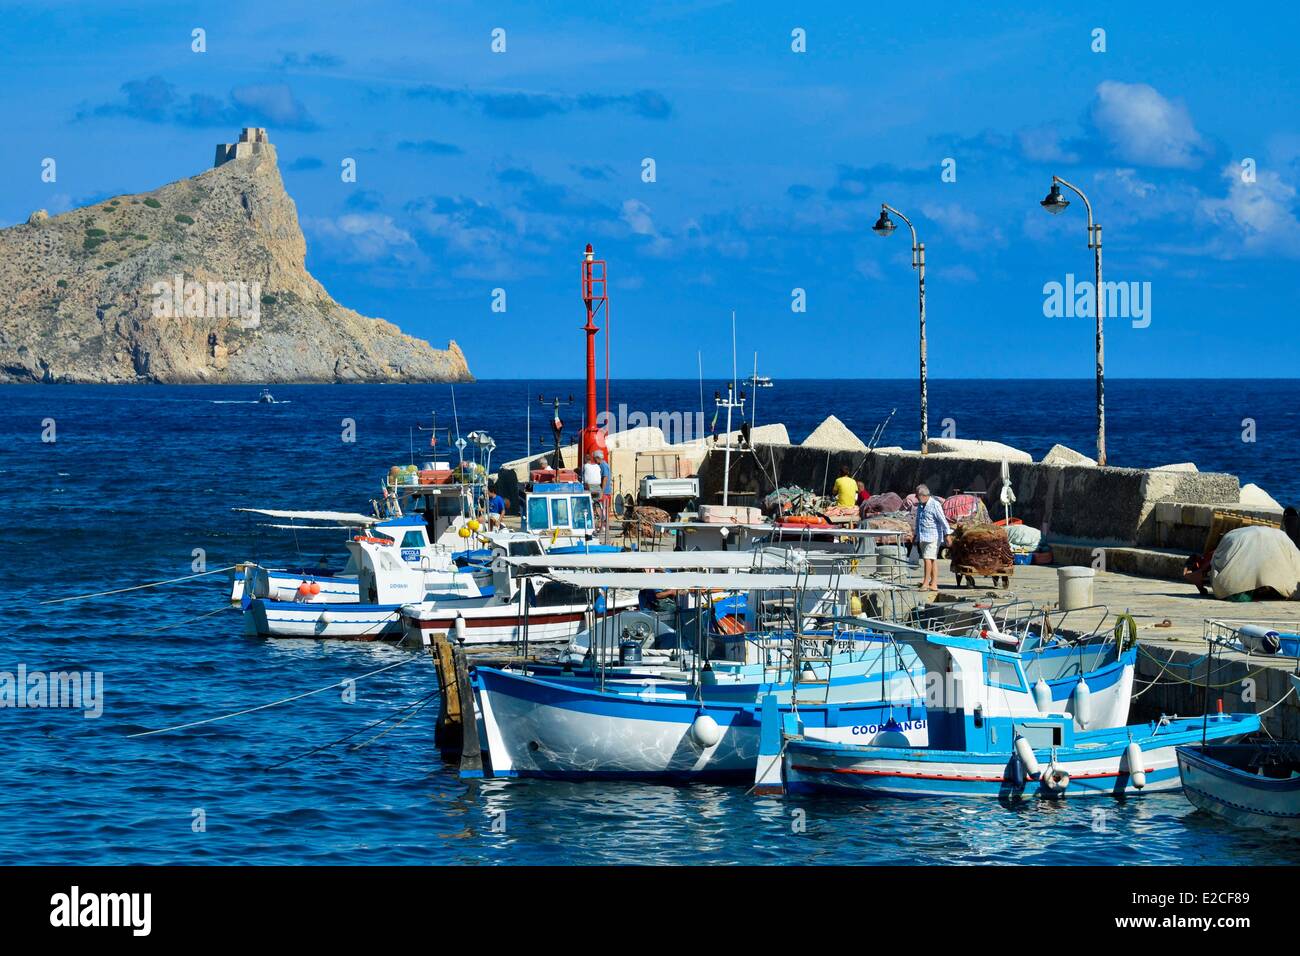 L'Italia, sicilia, isole Egadi, isola di Marettimo, porto di pesca, i pescherecci con reti da traino dock in legno con Punta Troia, castello in background Foto Stock